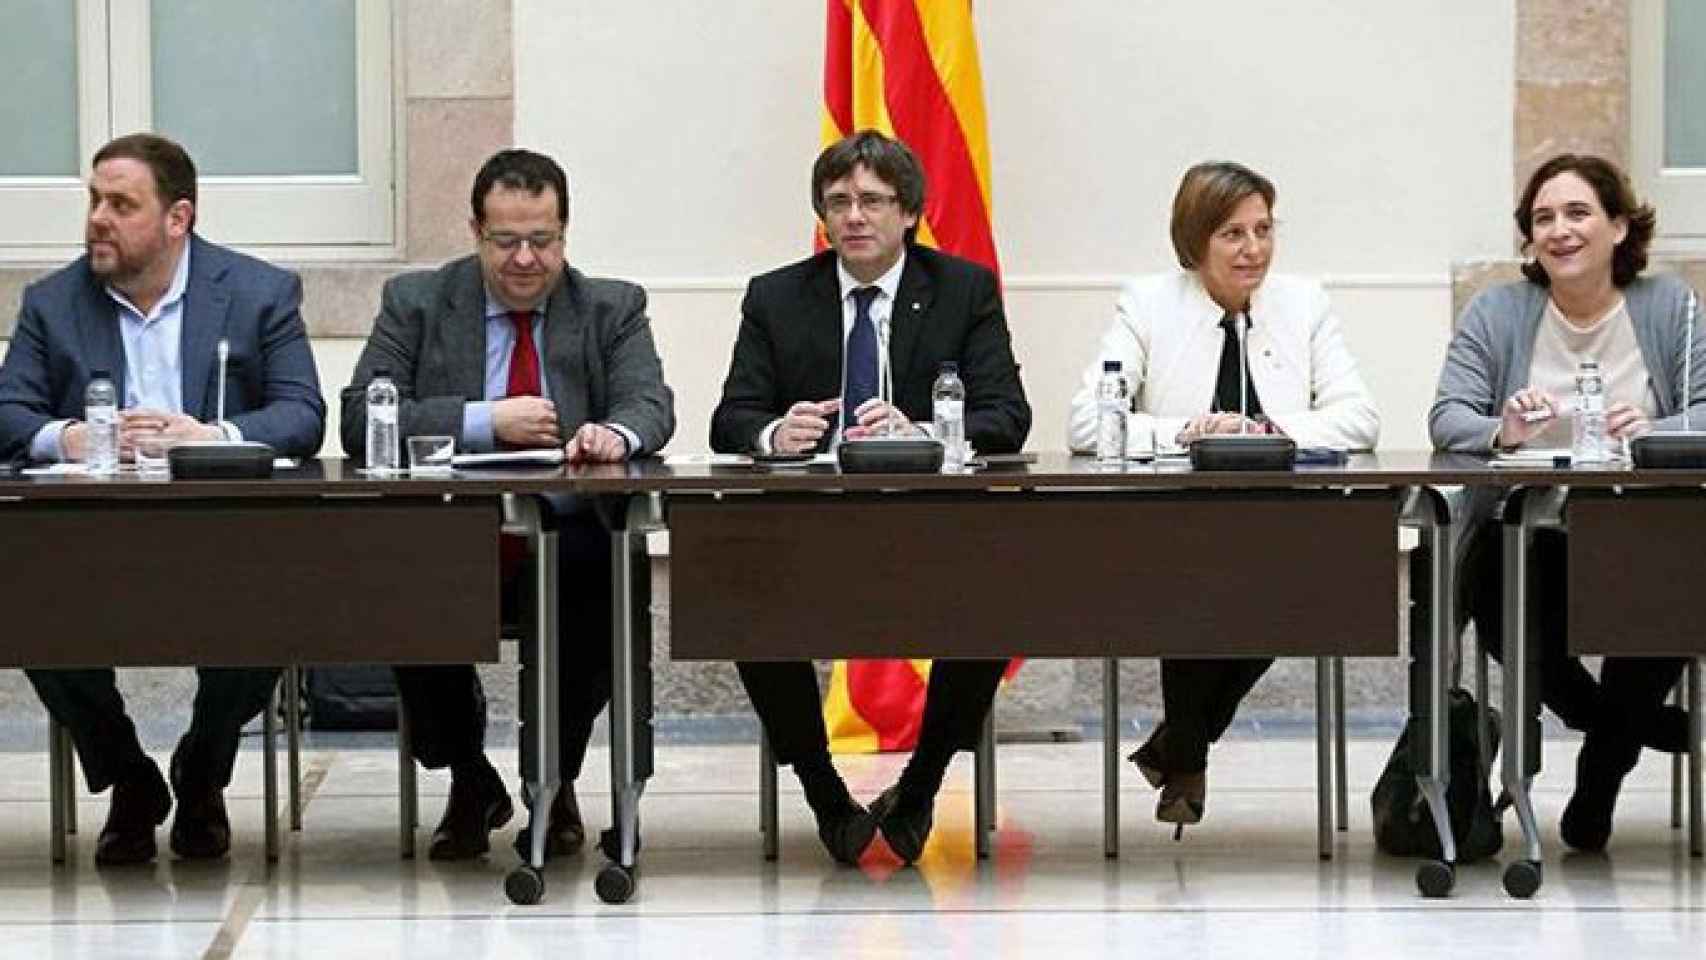 El presidente de la Generalitat, Carles Puigdemont; su vicepresidente, Oriol Junqueras; la alcaldesa de Barcelona, Ada Colau; la presidenta del Parlament, Carme Forcadell; y el coordinador del Pacto por el Referéndum, Joan Ignasi Elena